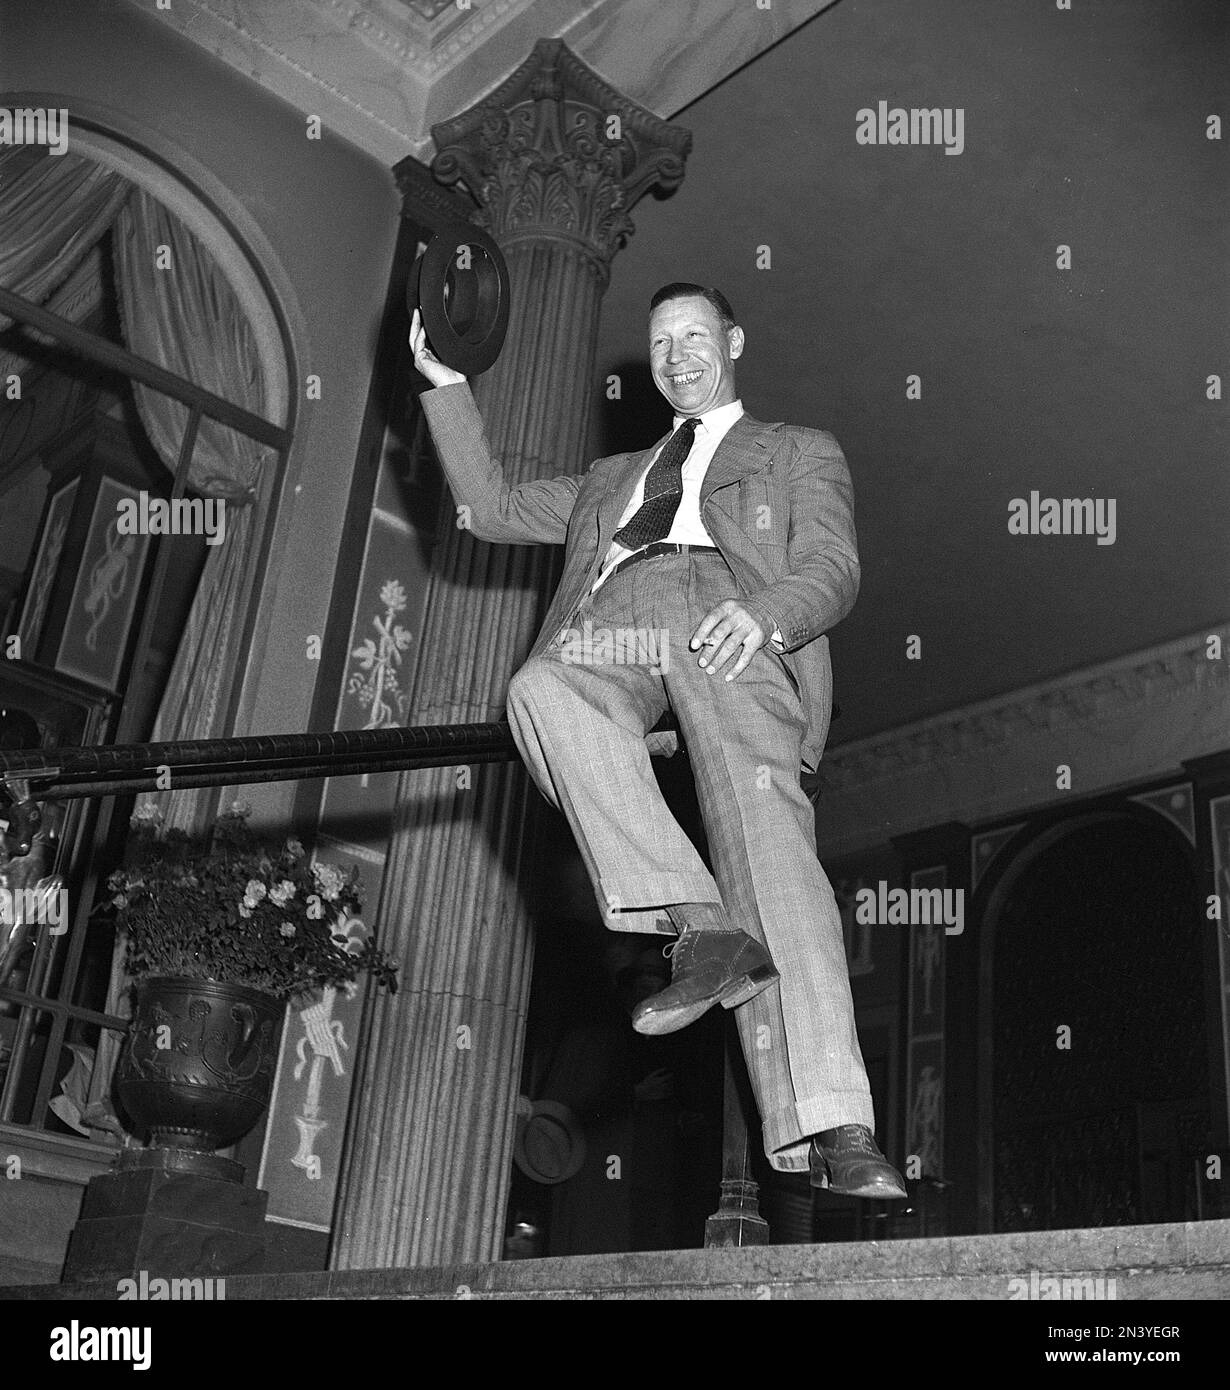 George Formby. Britischer Sänger, Schauspieler bekannt als Ukulele-Mann. 1904-1961. Er war der bestbezahlte britische Schauspieler 1940. Hier, als er Stockholm Schweden im Grand Hotel besuchte, wo er mit seiner Frau wohnte. 1946 Ref. T137-2 Stockfoto